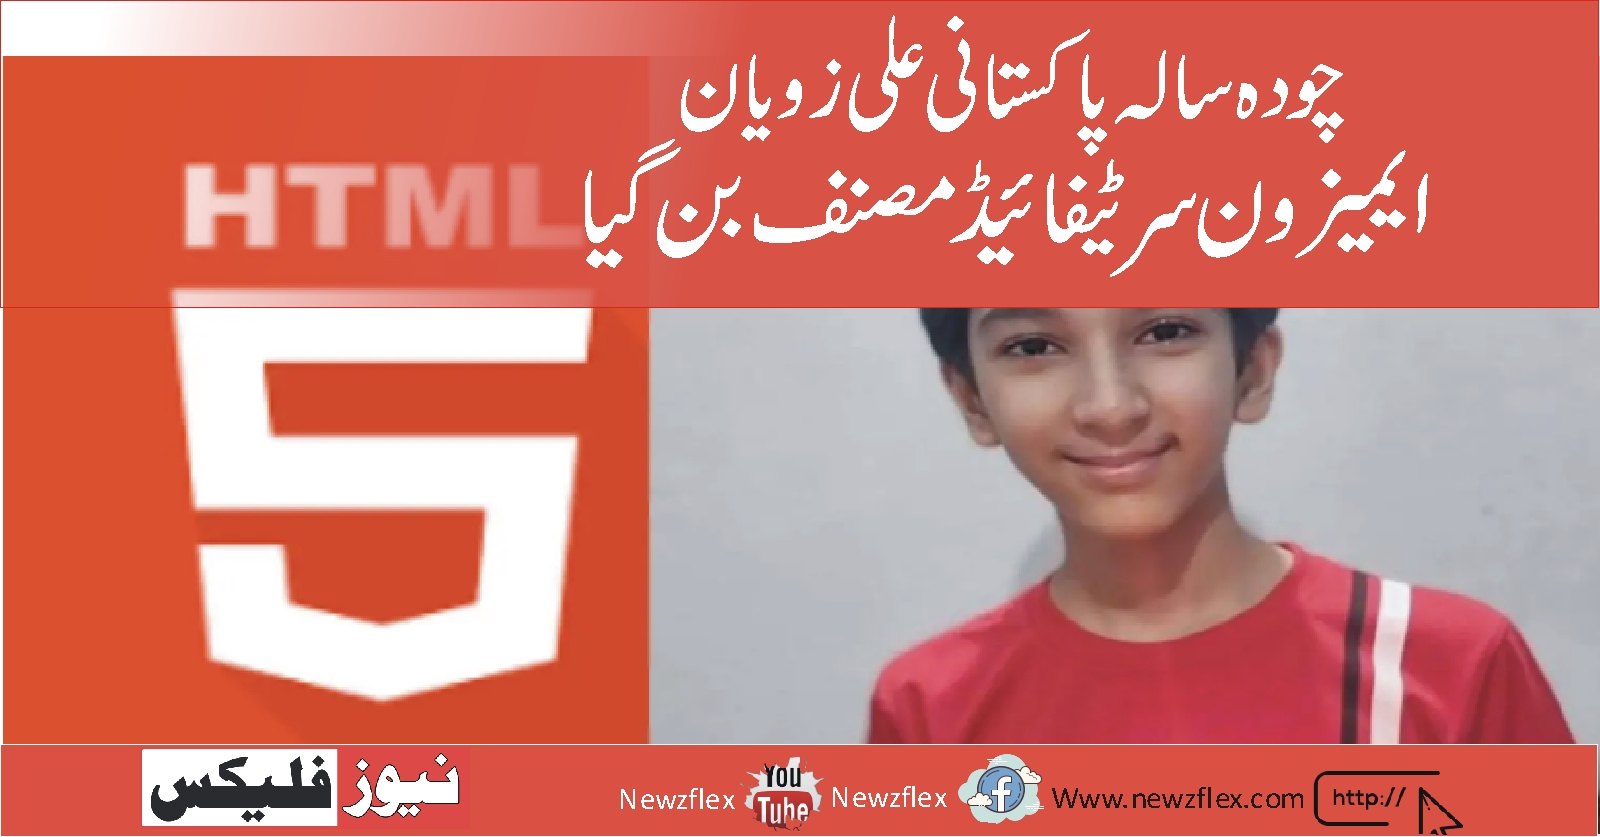 14 سالہ پاکستانی ، علی زویان نے HTML5 کے بارے میں ایک کتاب لکھی - ایمیزون مصدقہ مصنف